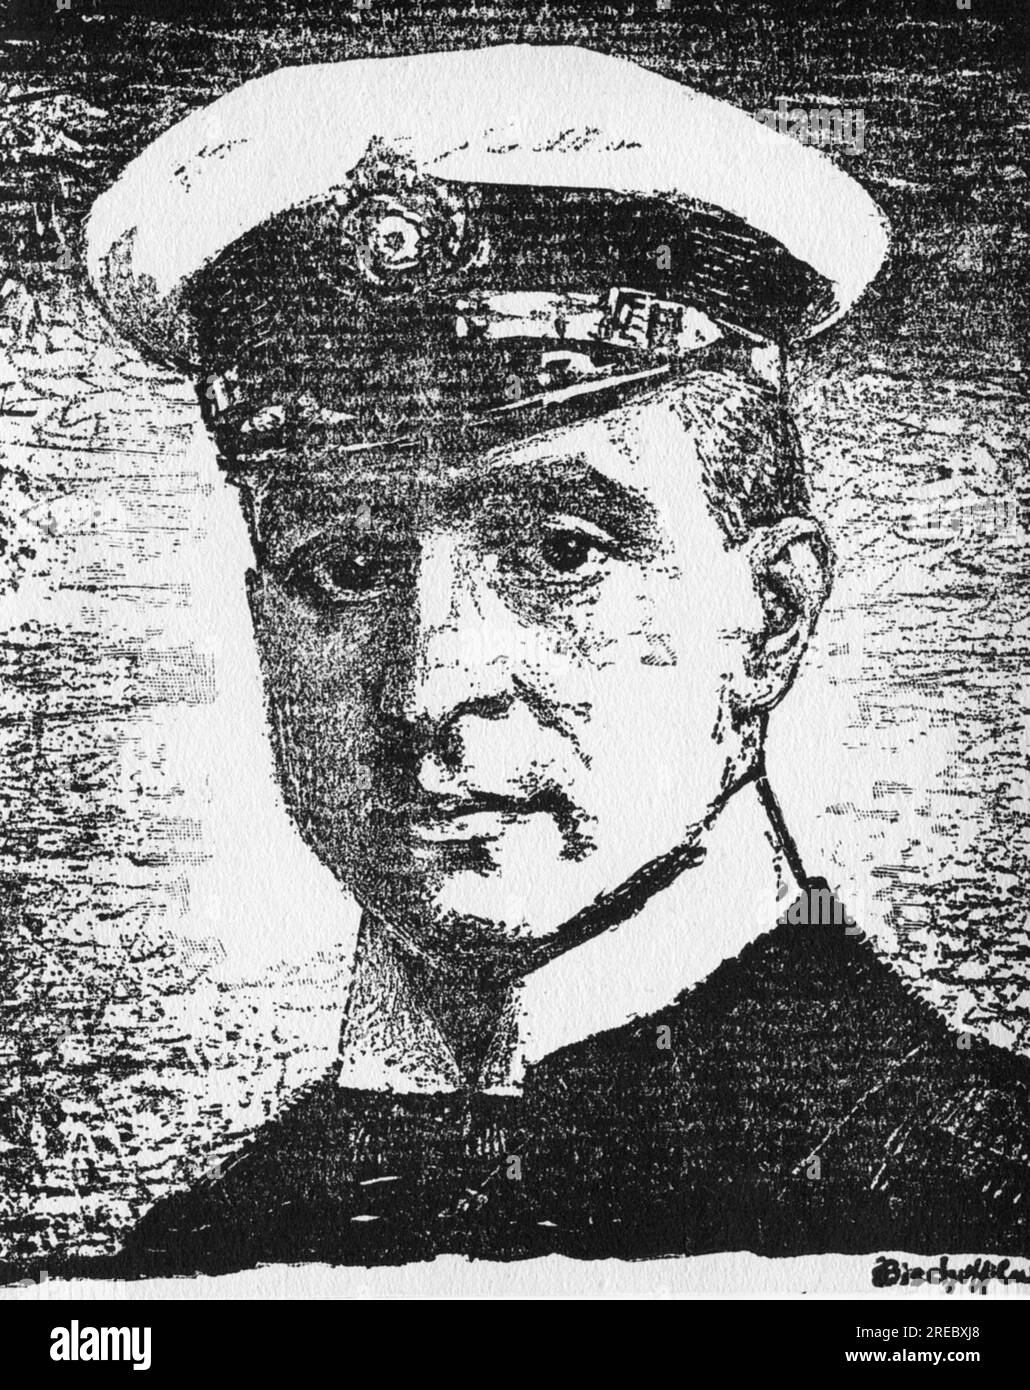 Weddigen, Otto, 15.9.1882 - 18.3,1915, officier de marine allemand, commandant de U 9, dessin, vers 1915, INFORMATION-AUTORISATION-DROITS-SUPPLÉMENTAIRES-NON-DISPONIBLE Banque D'Images